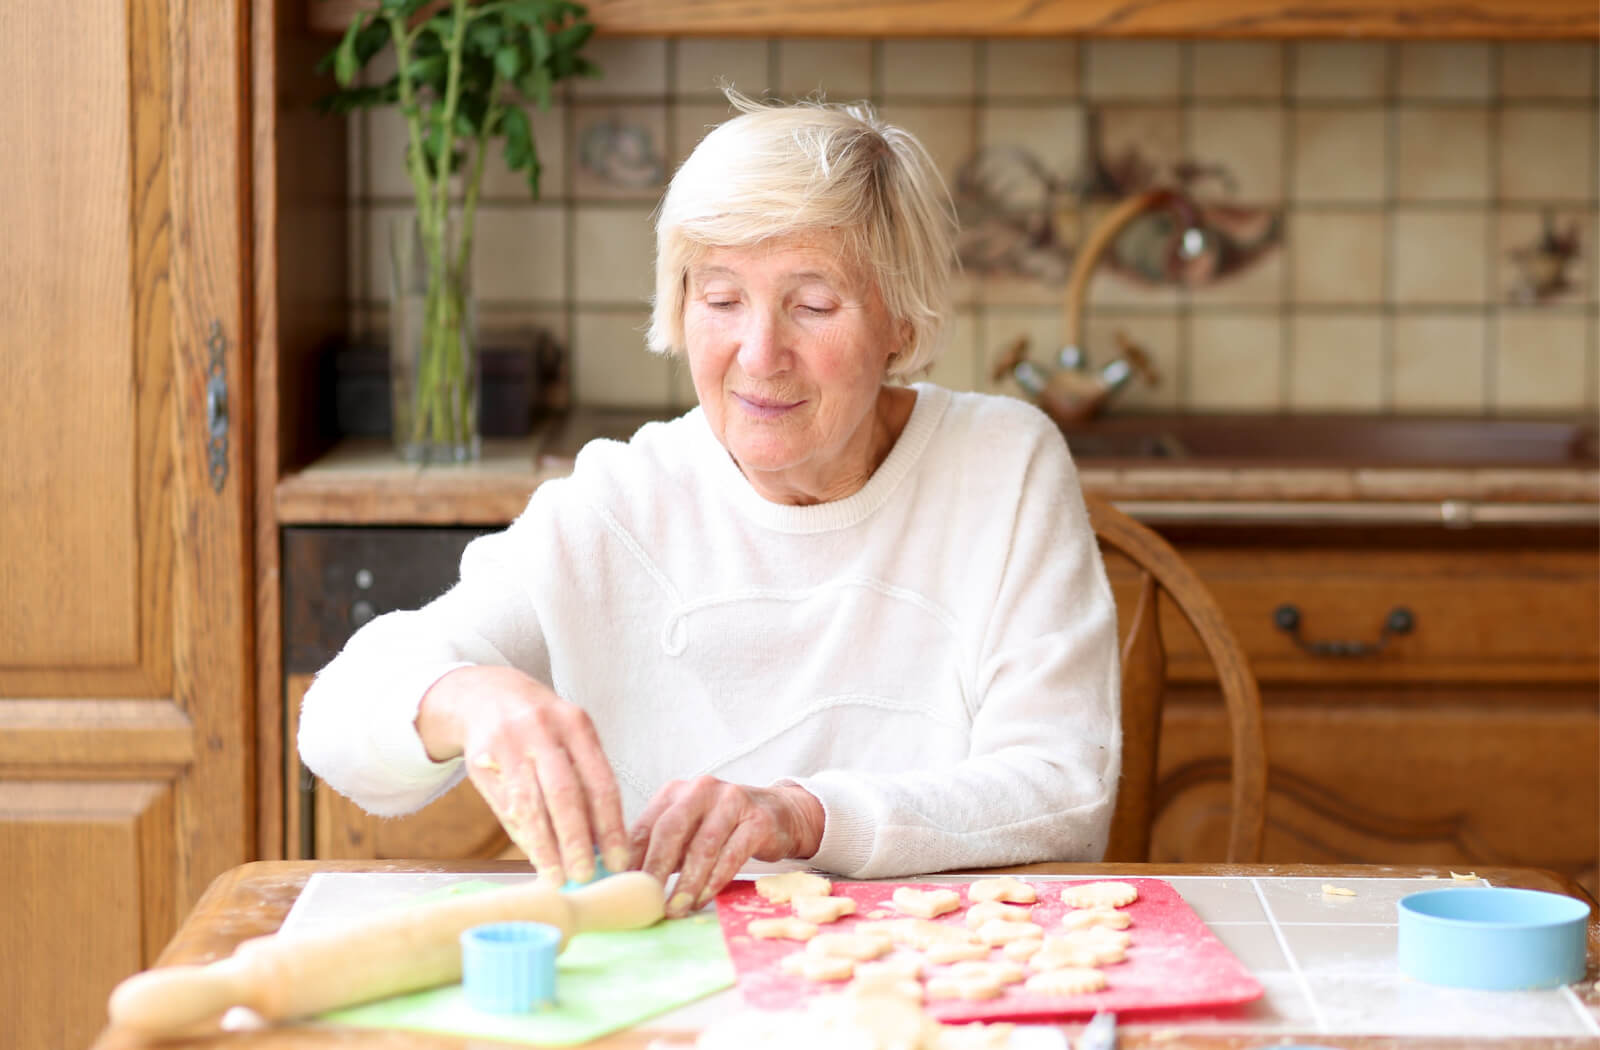 7 Engaging Activities for Seniors in Dementia Memory Care